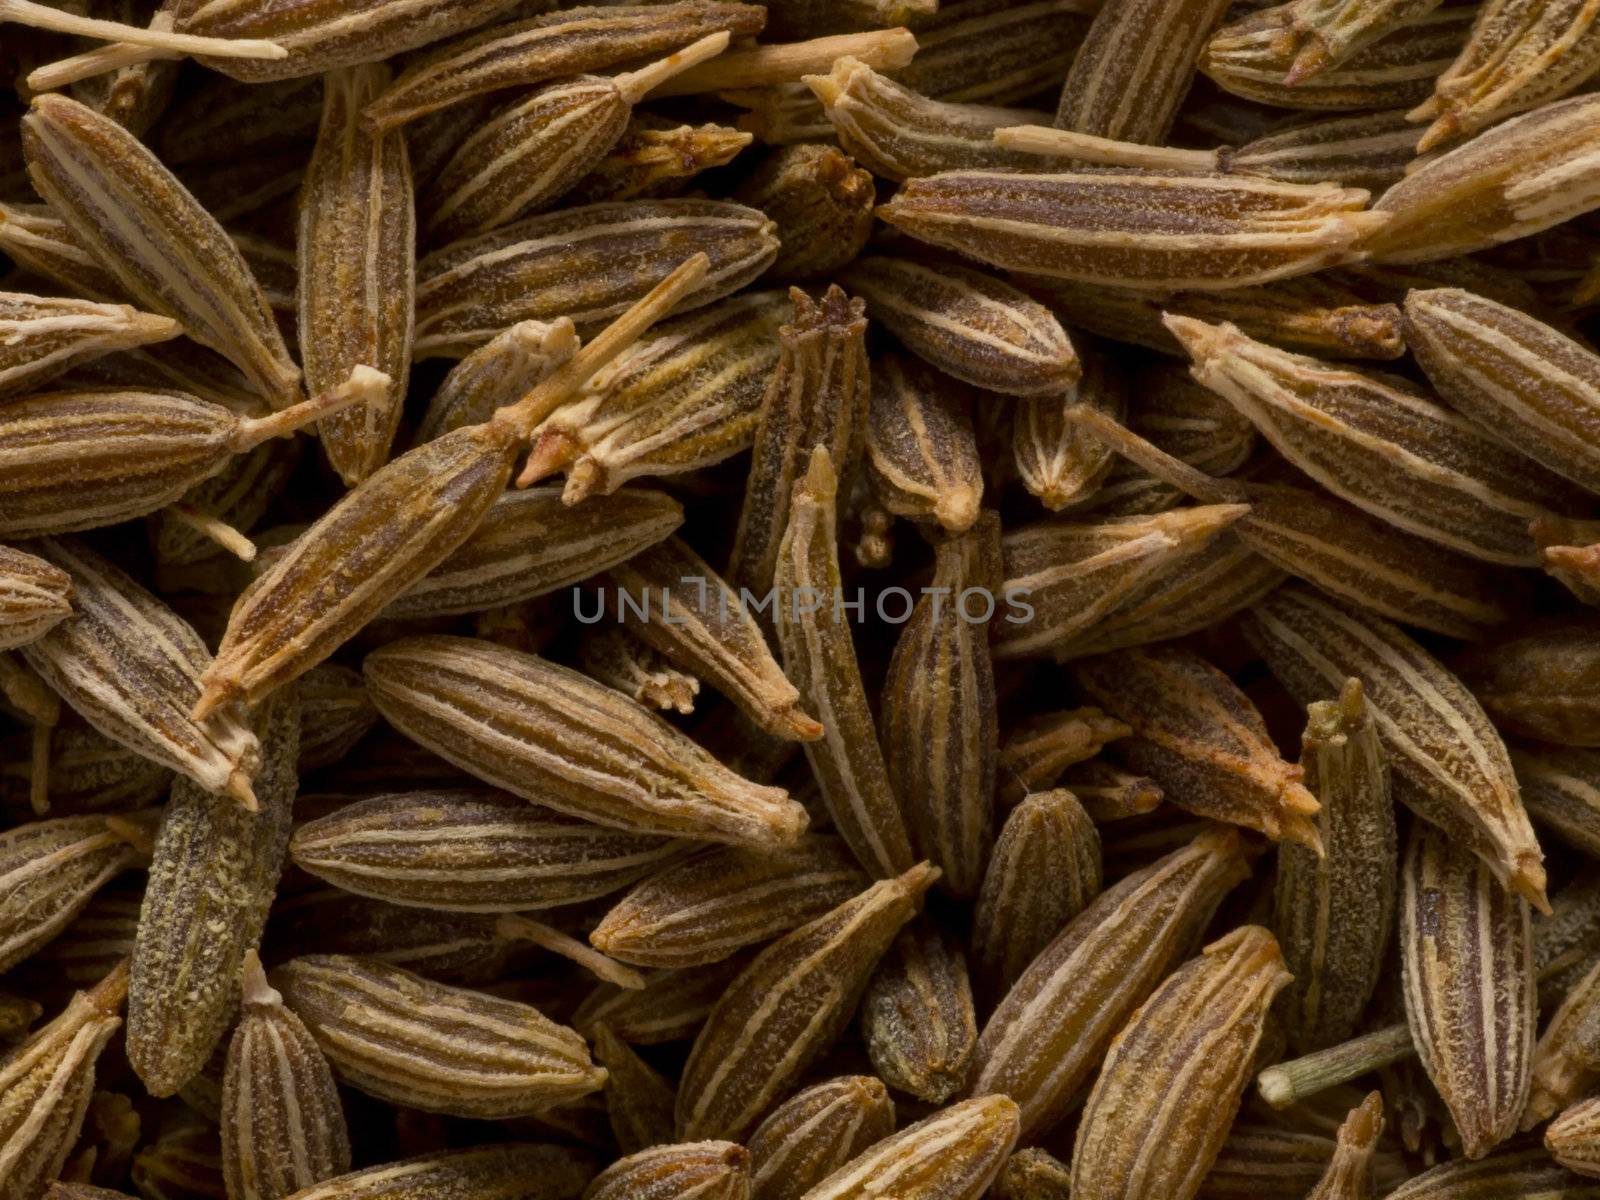 cumin seeds by zkruger